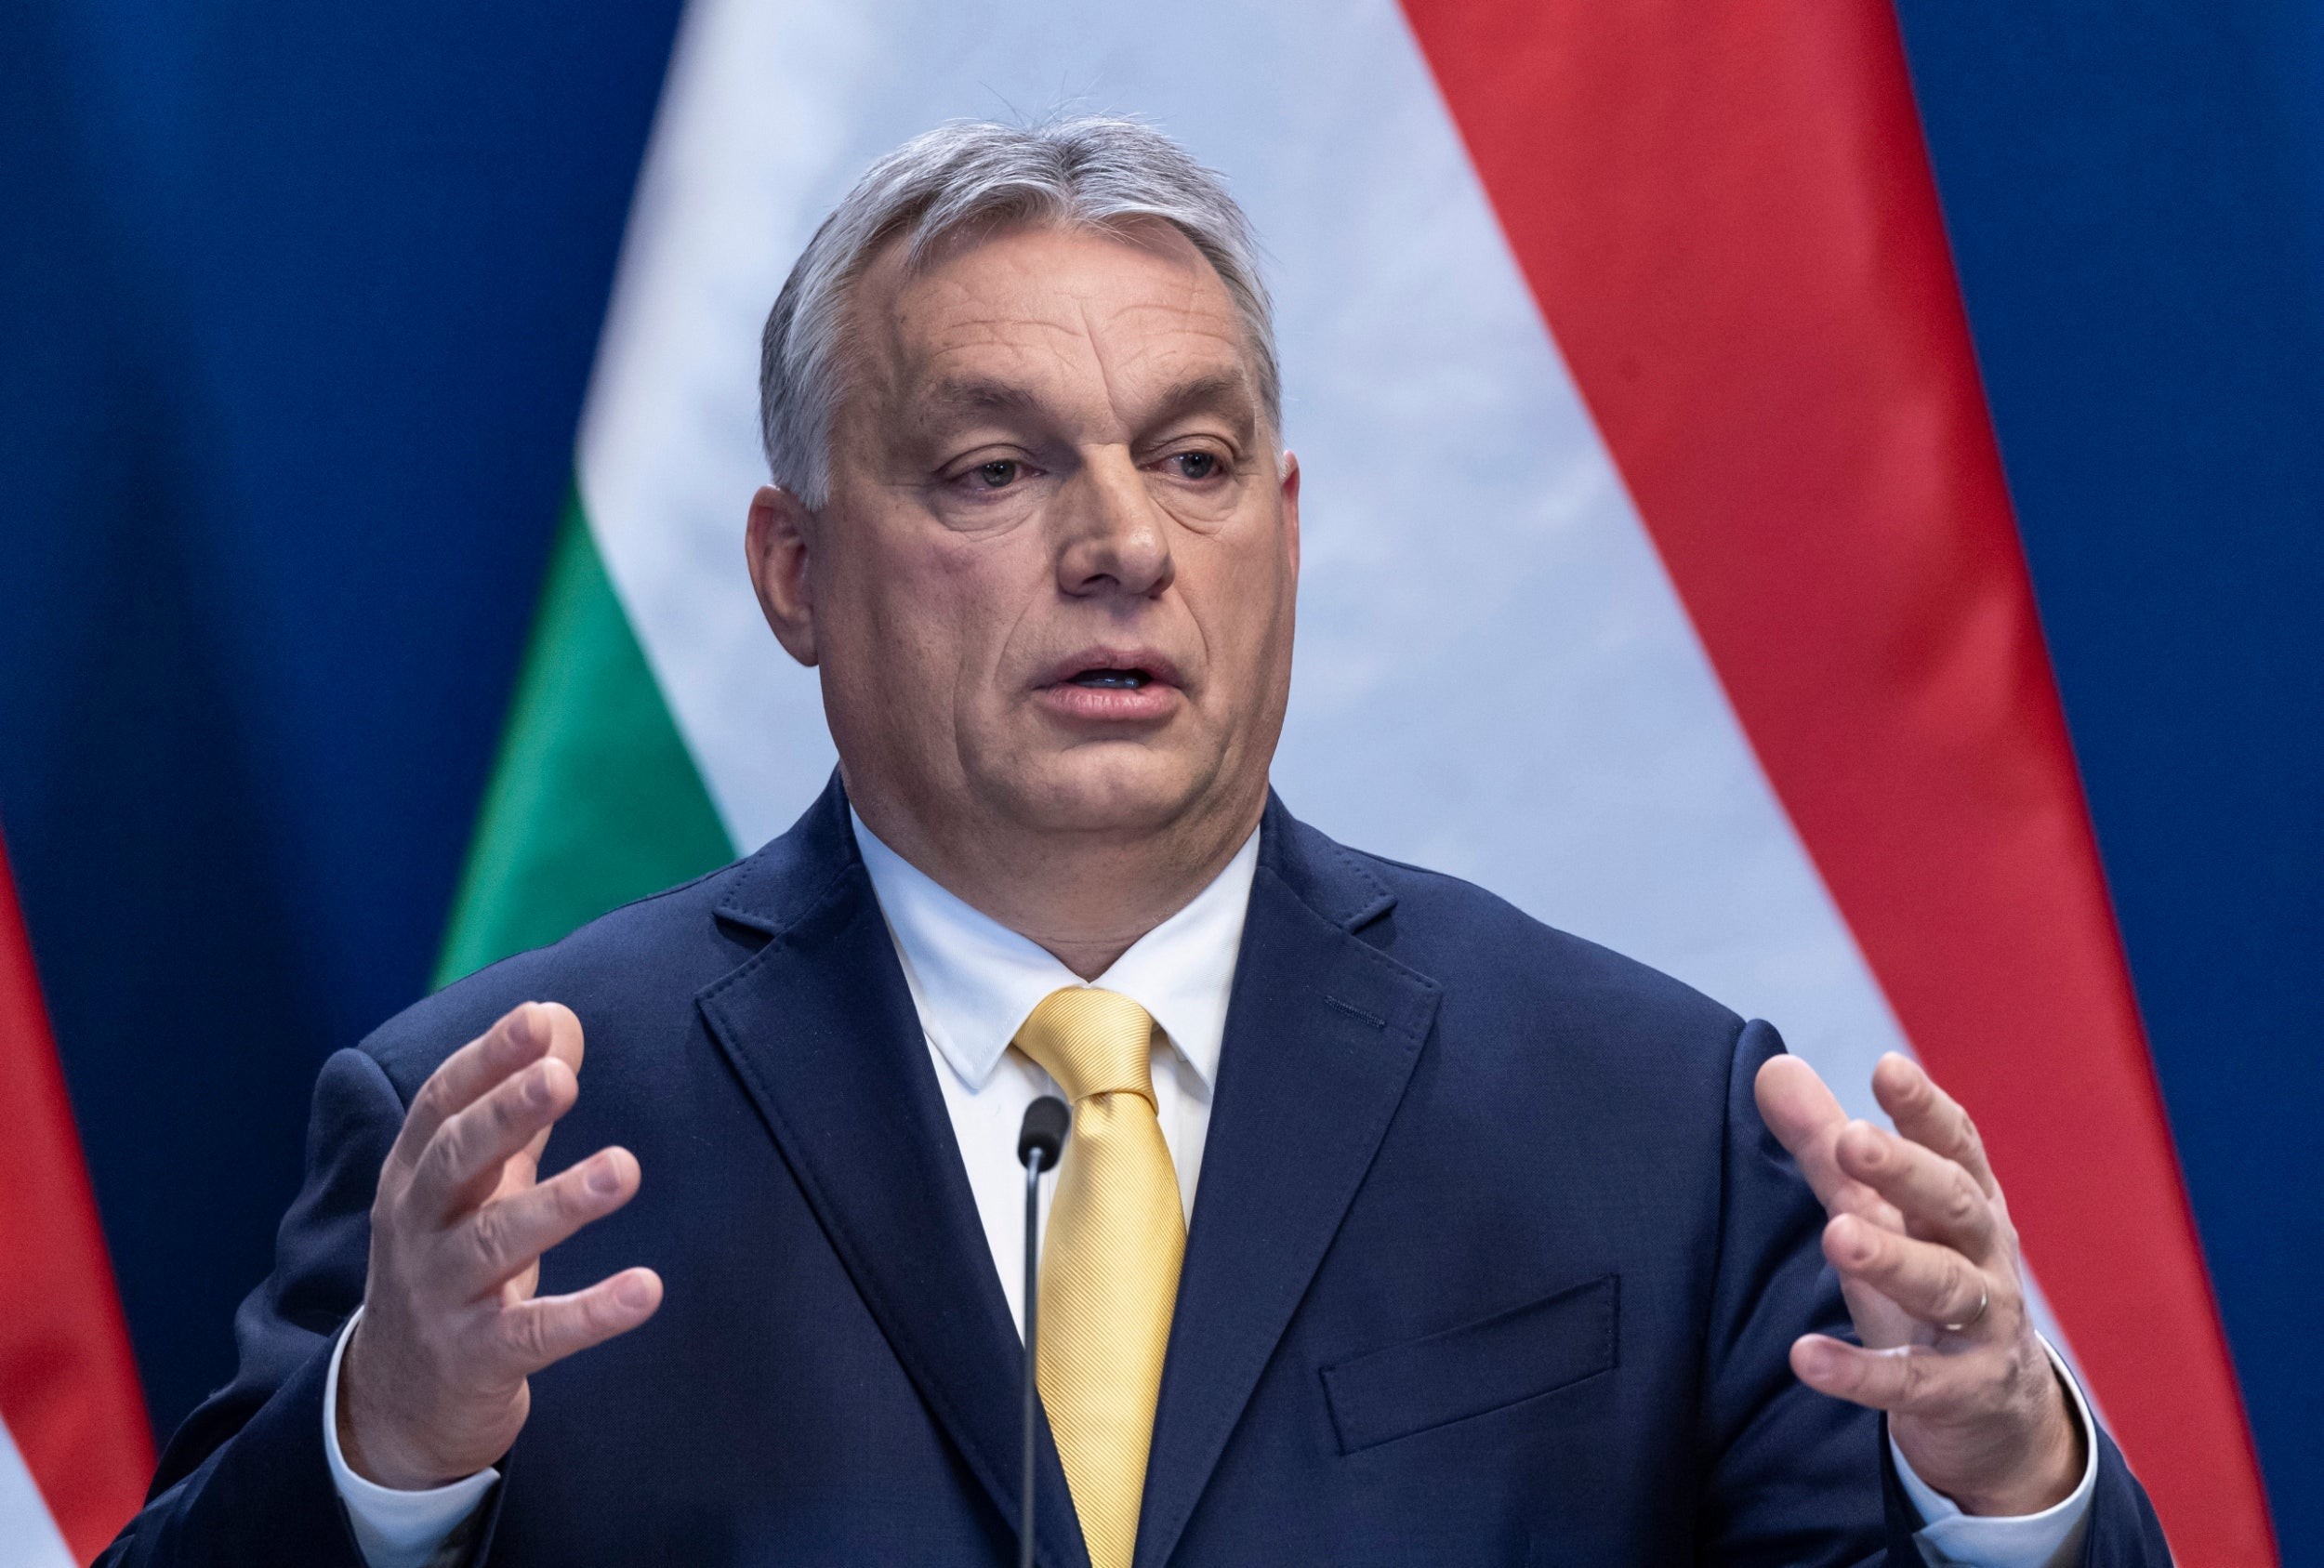 Орбан заявил, что не даст ЕС совершить ошибку и начать переговоры о вступлении с Украиной